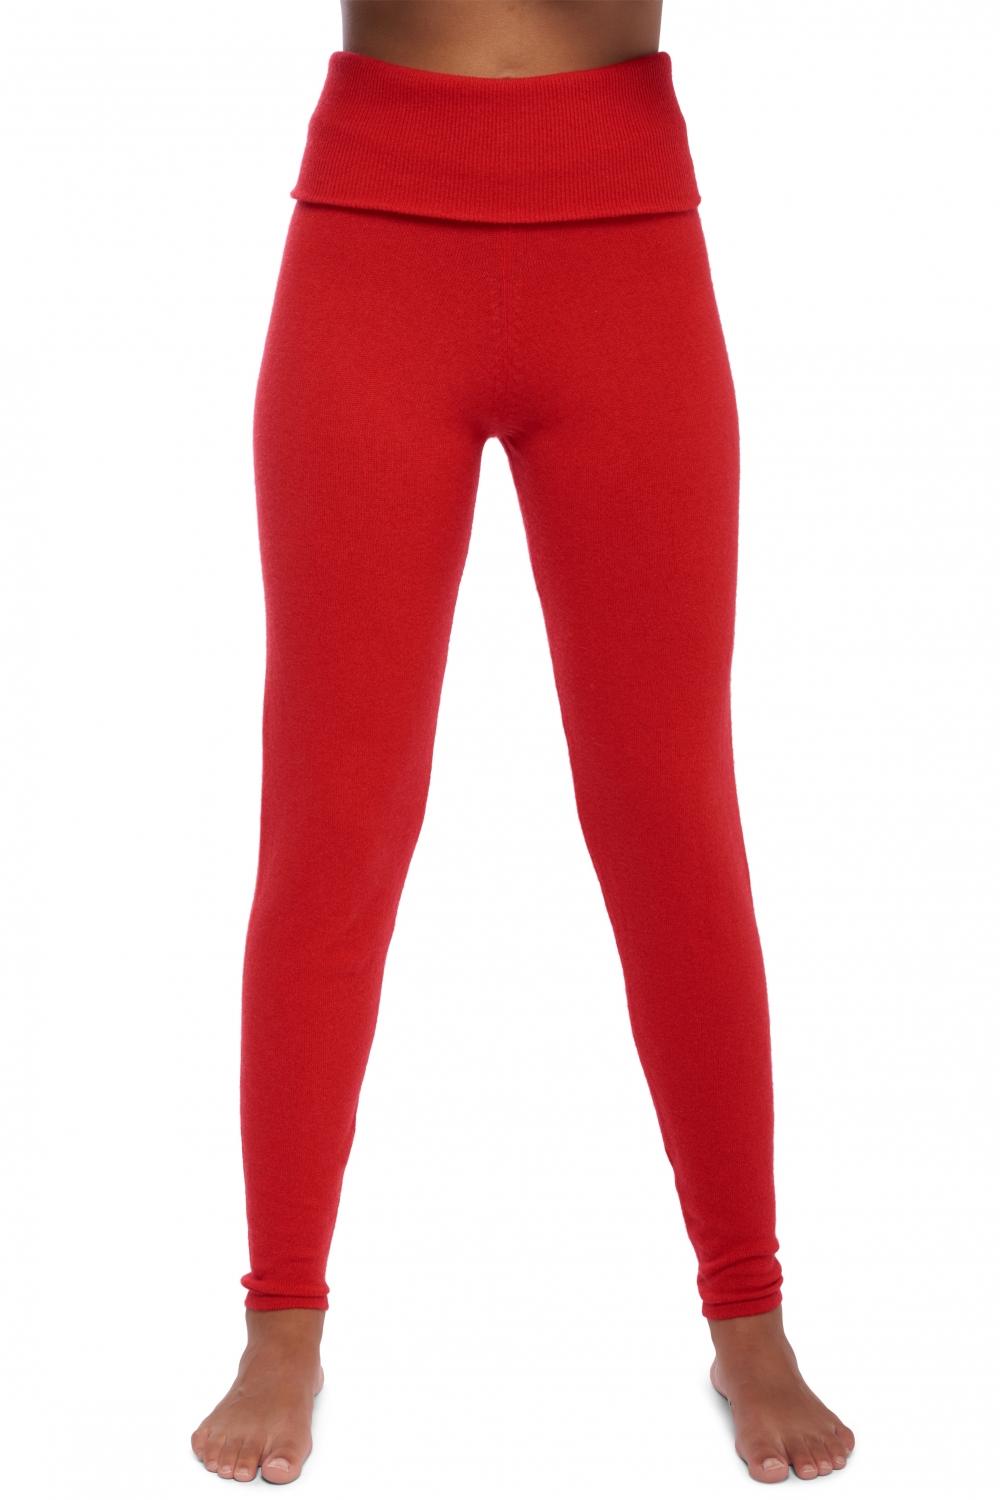 Kasjmier dames kasjmier broeken leggings shirley rouge 2xl